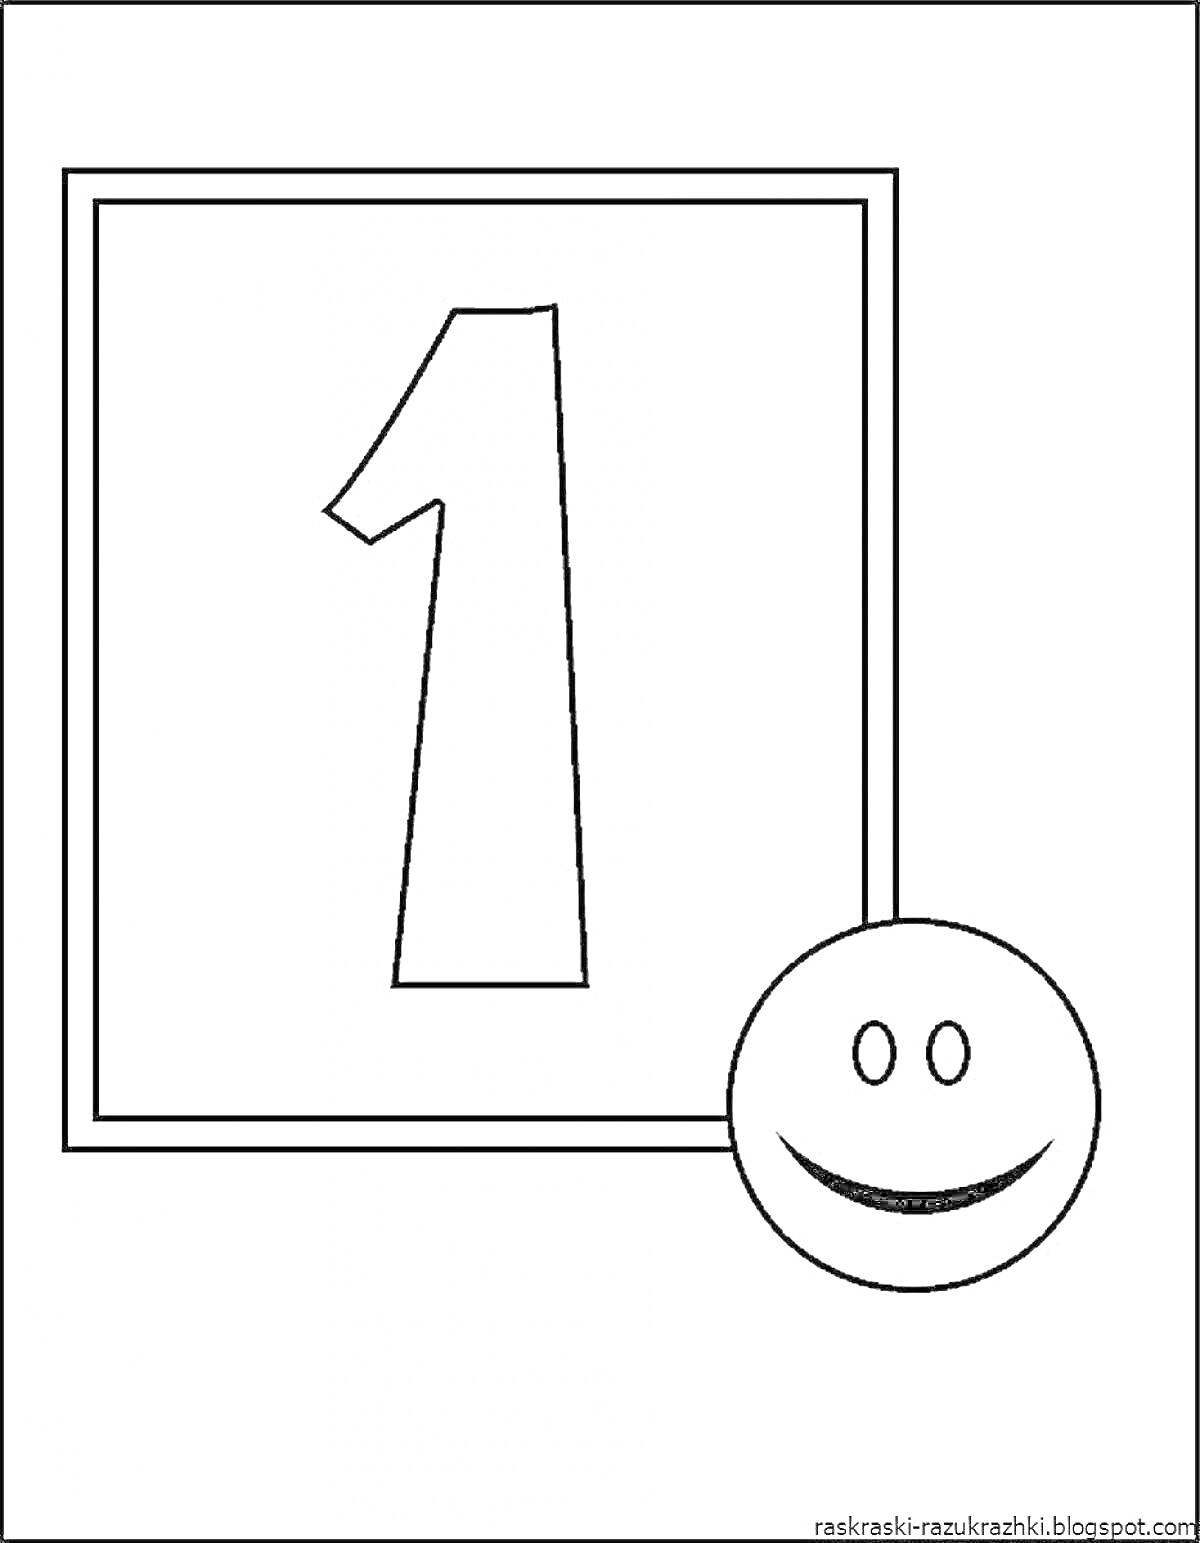 Раскраска Цифра 1 в квадратной рамке с улыбающимся смайлом